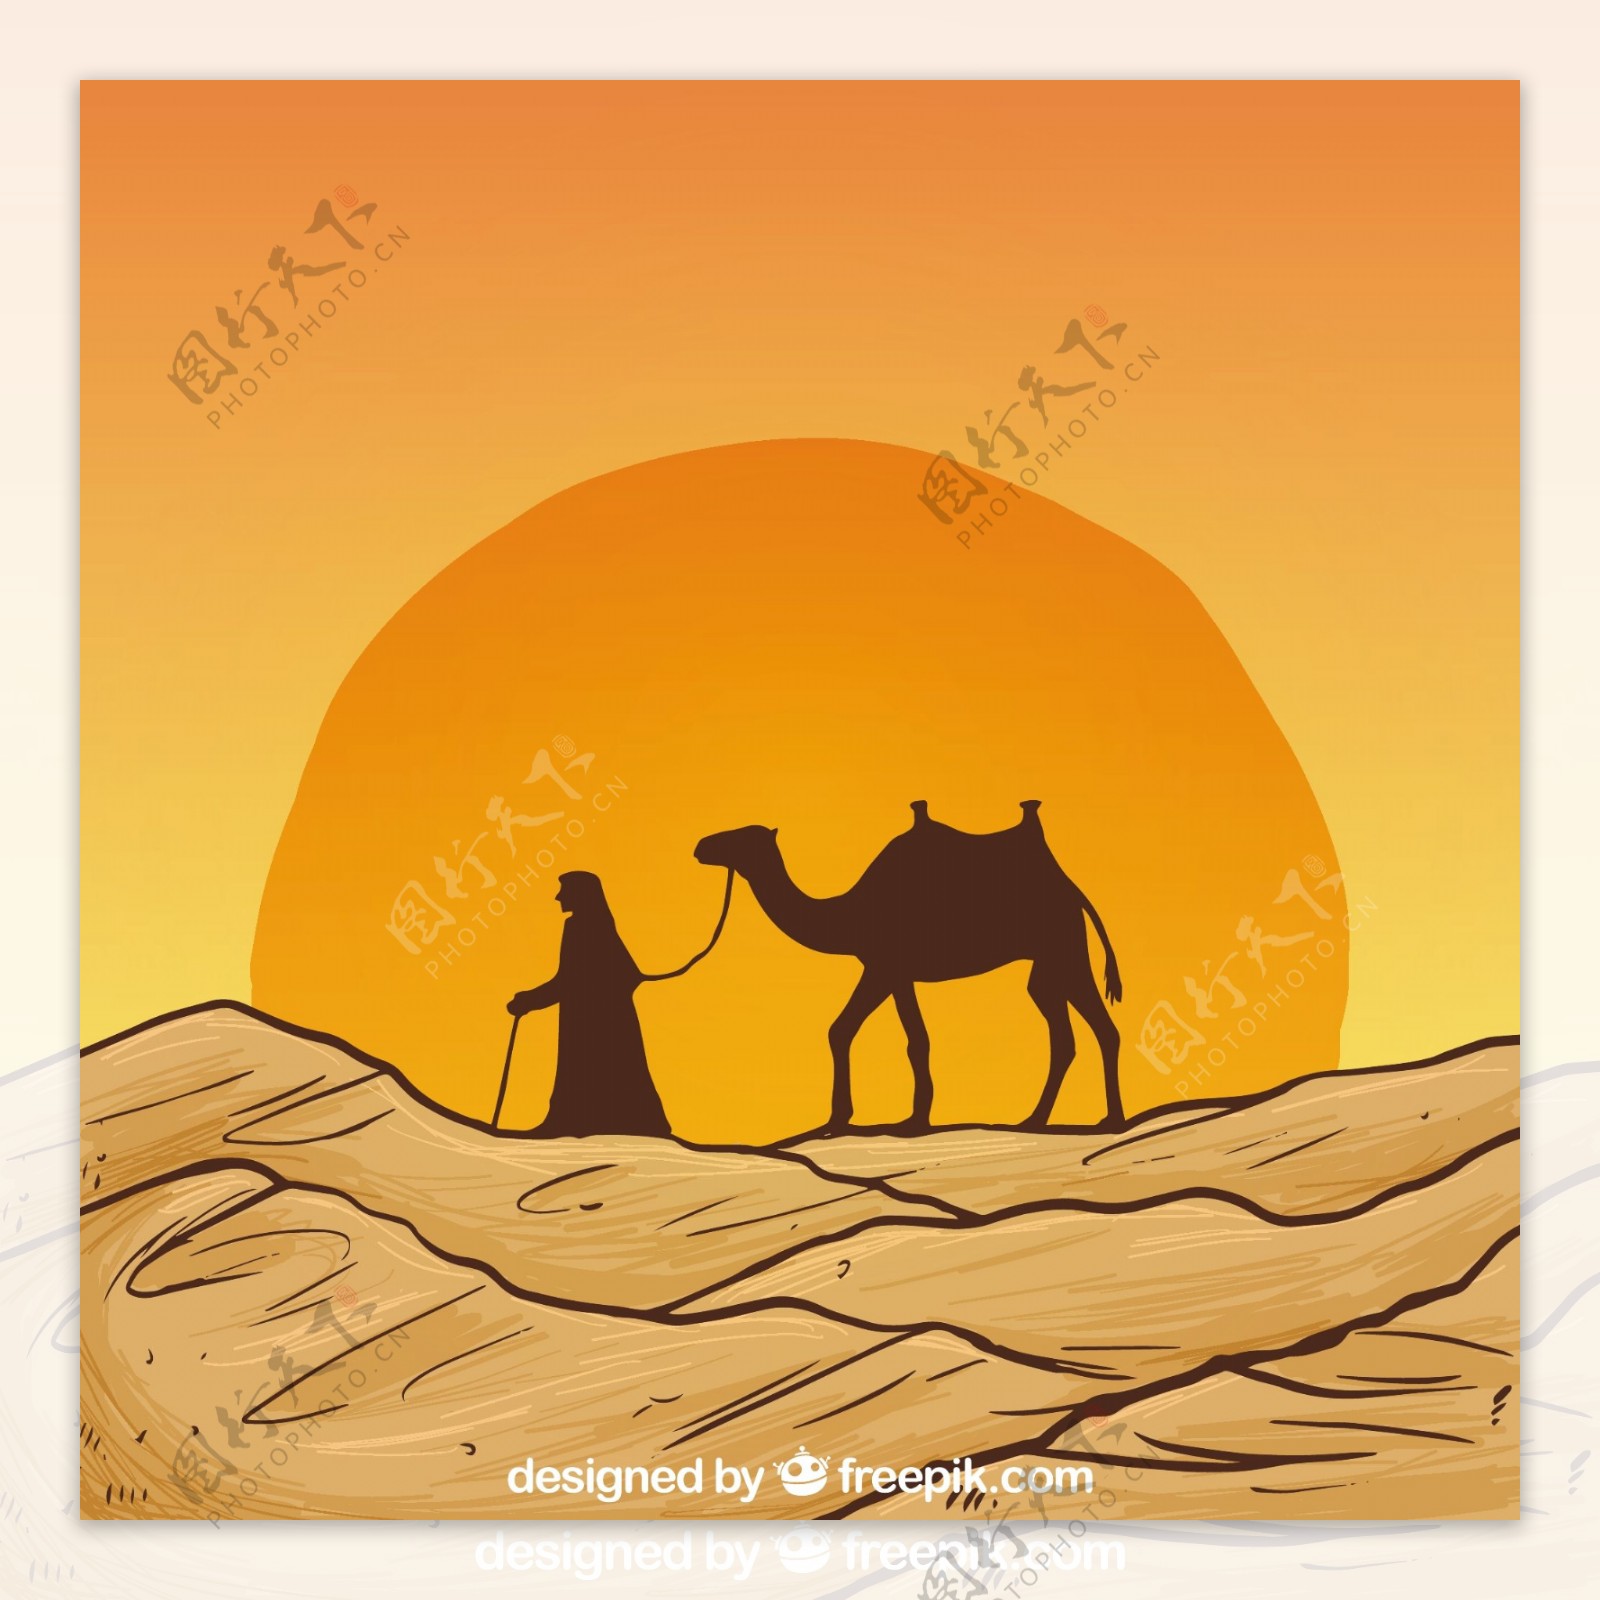 用骆驼剪影手绘沙漠景观